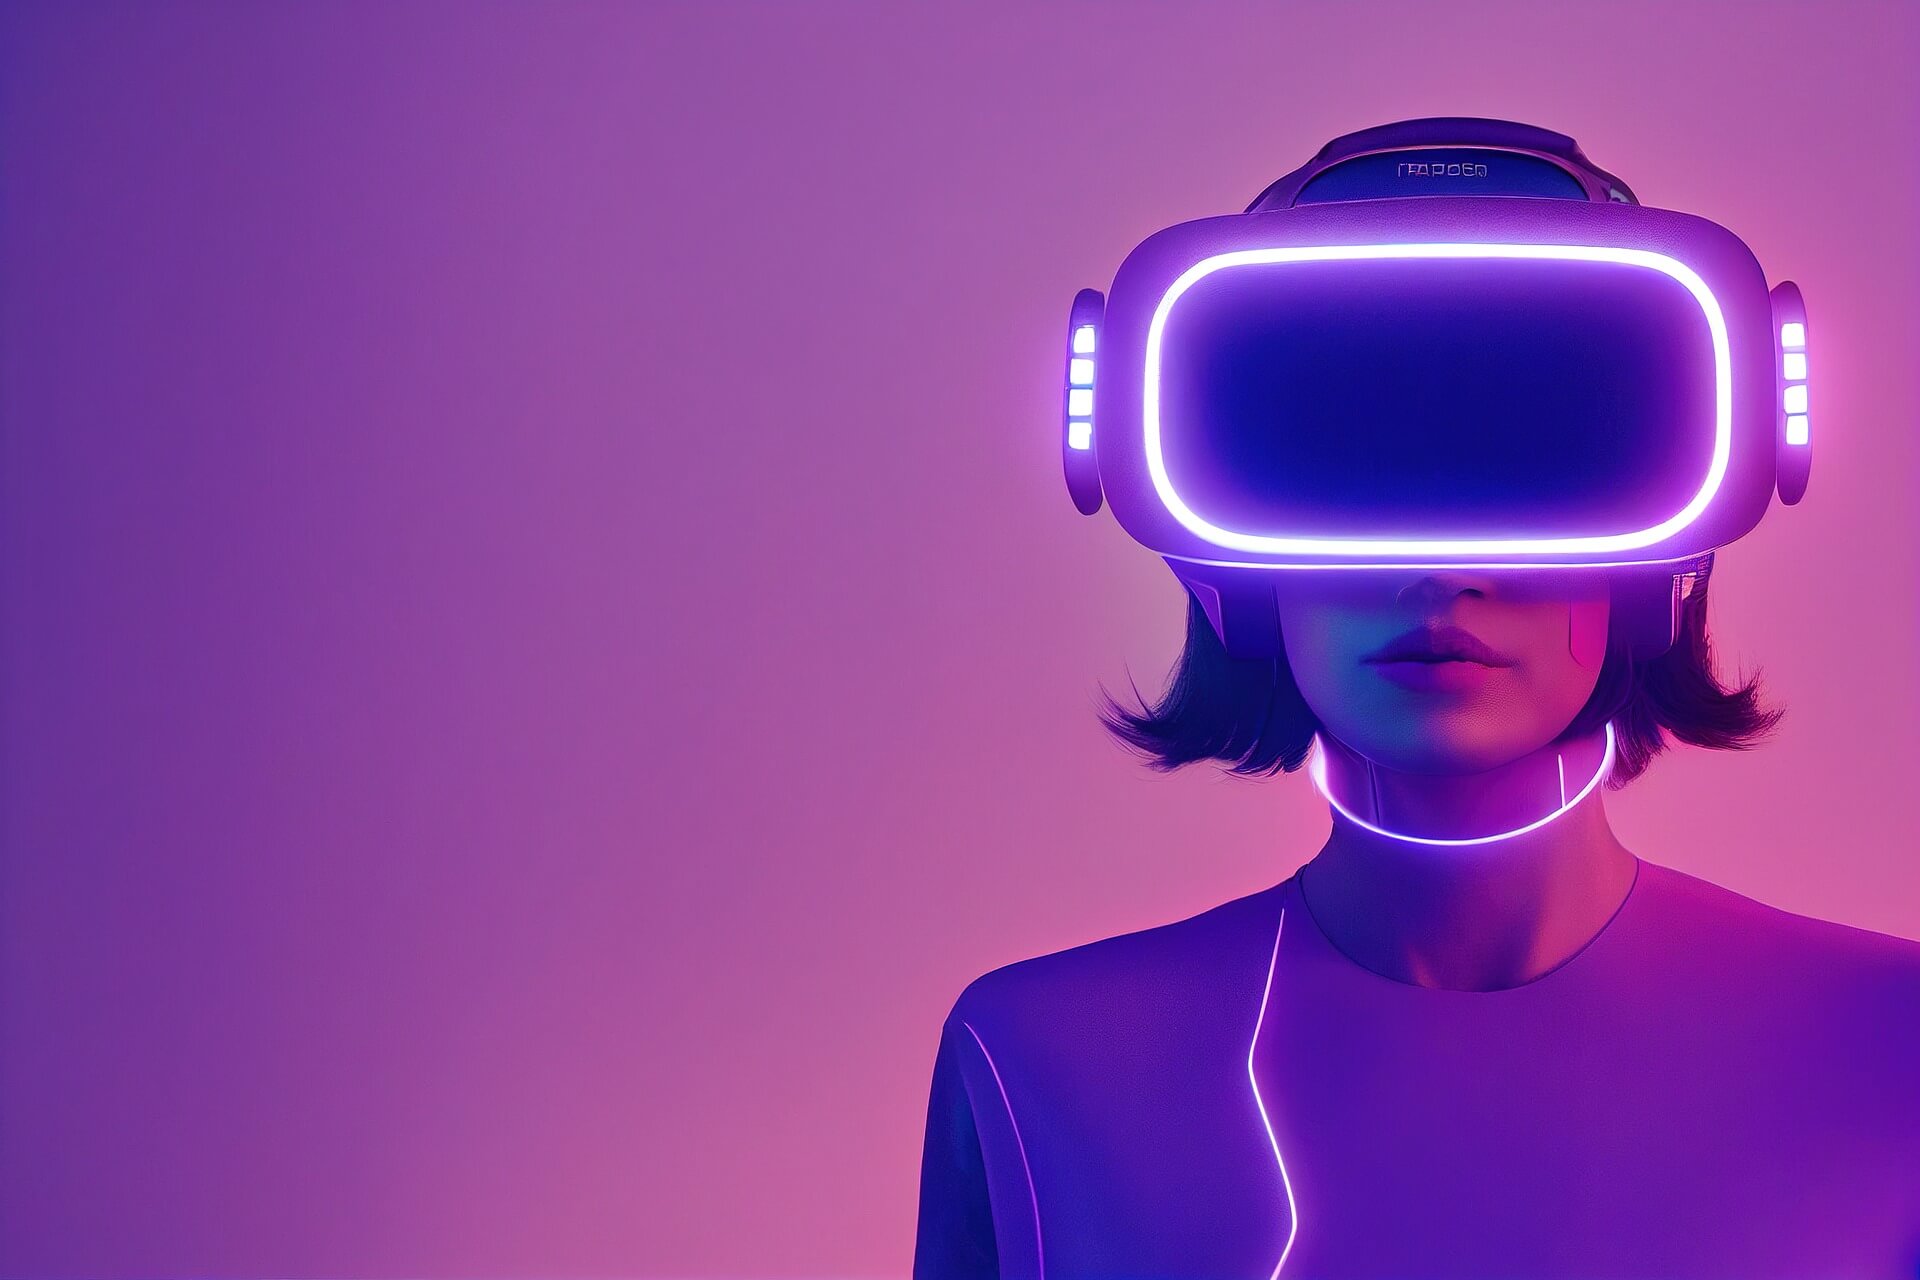 图片展示一位女性佩戴着虚拟现实头盔，周围光线柔和，整体色调呈现紫色调，科技感十足。